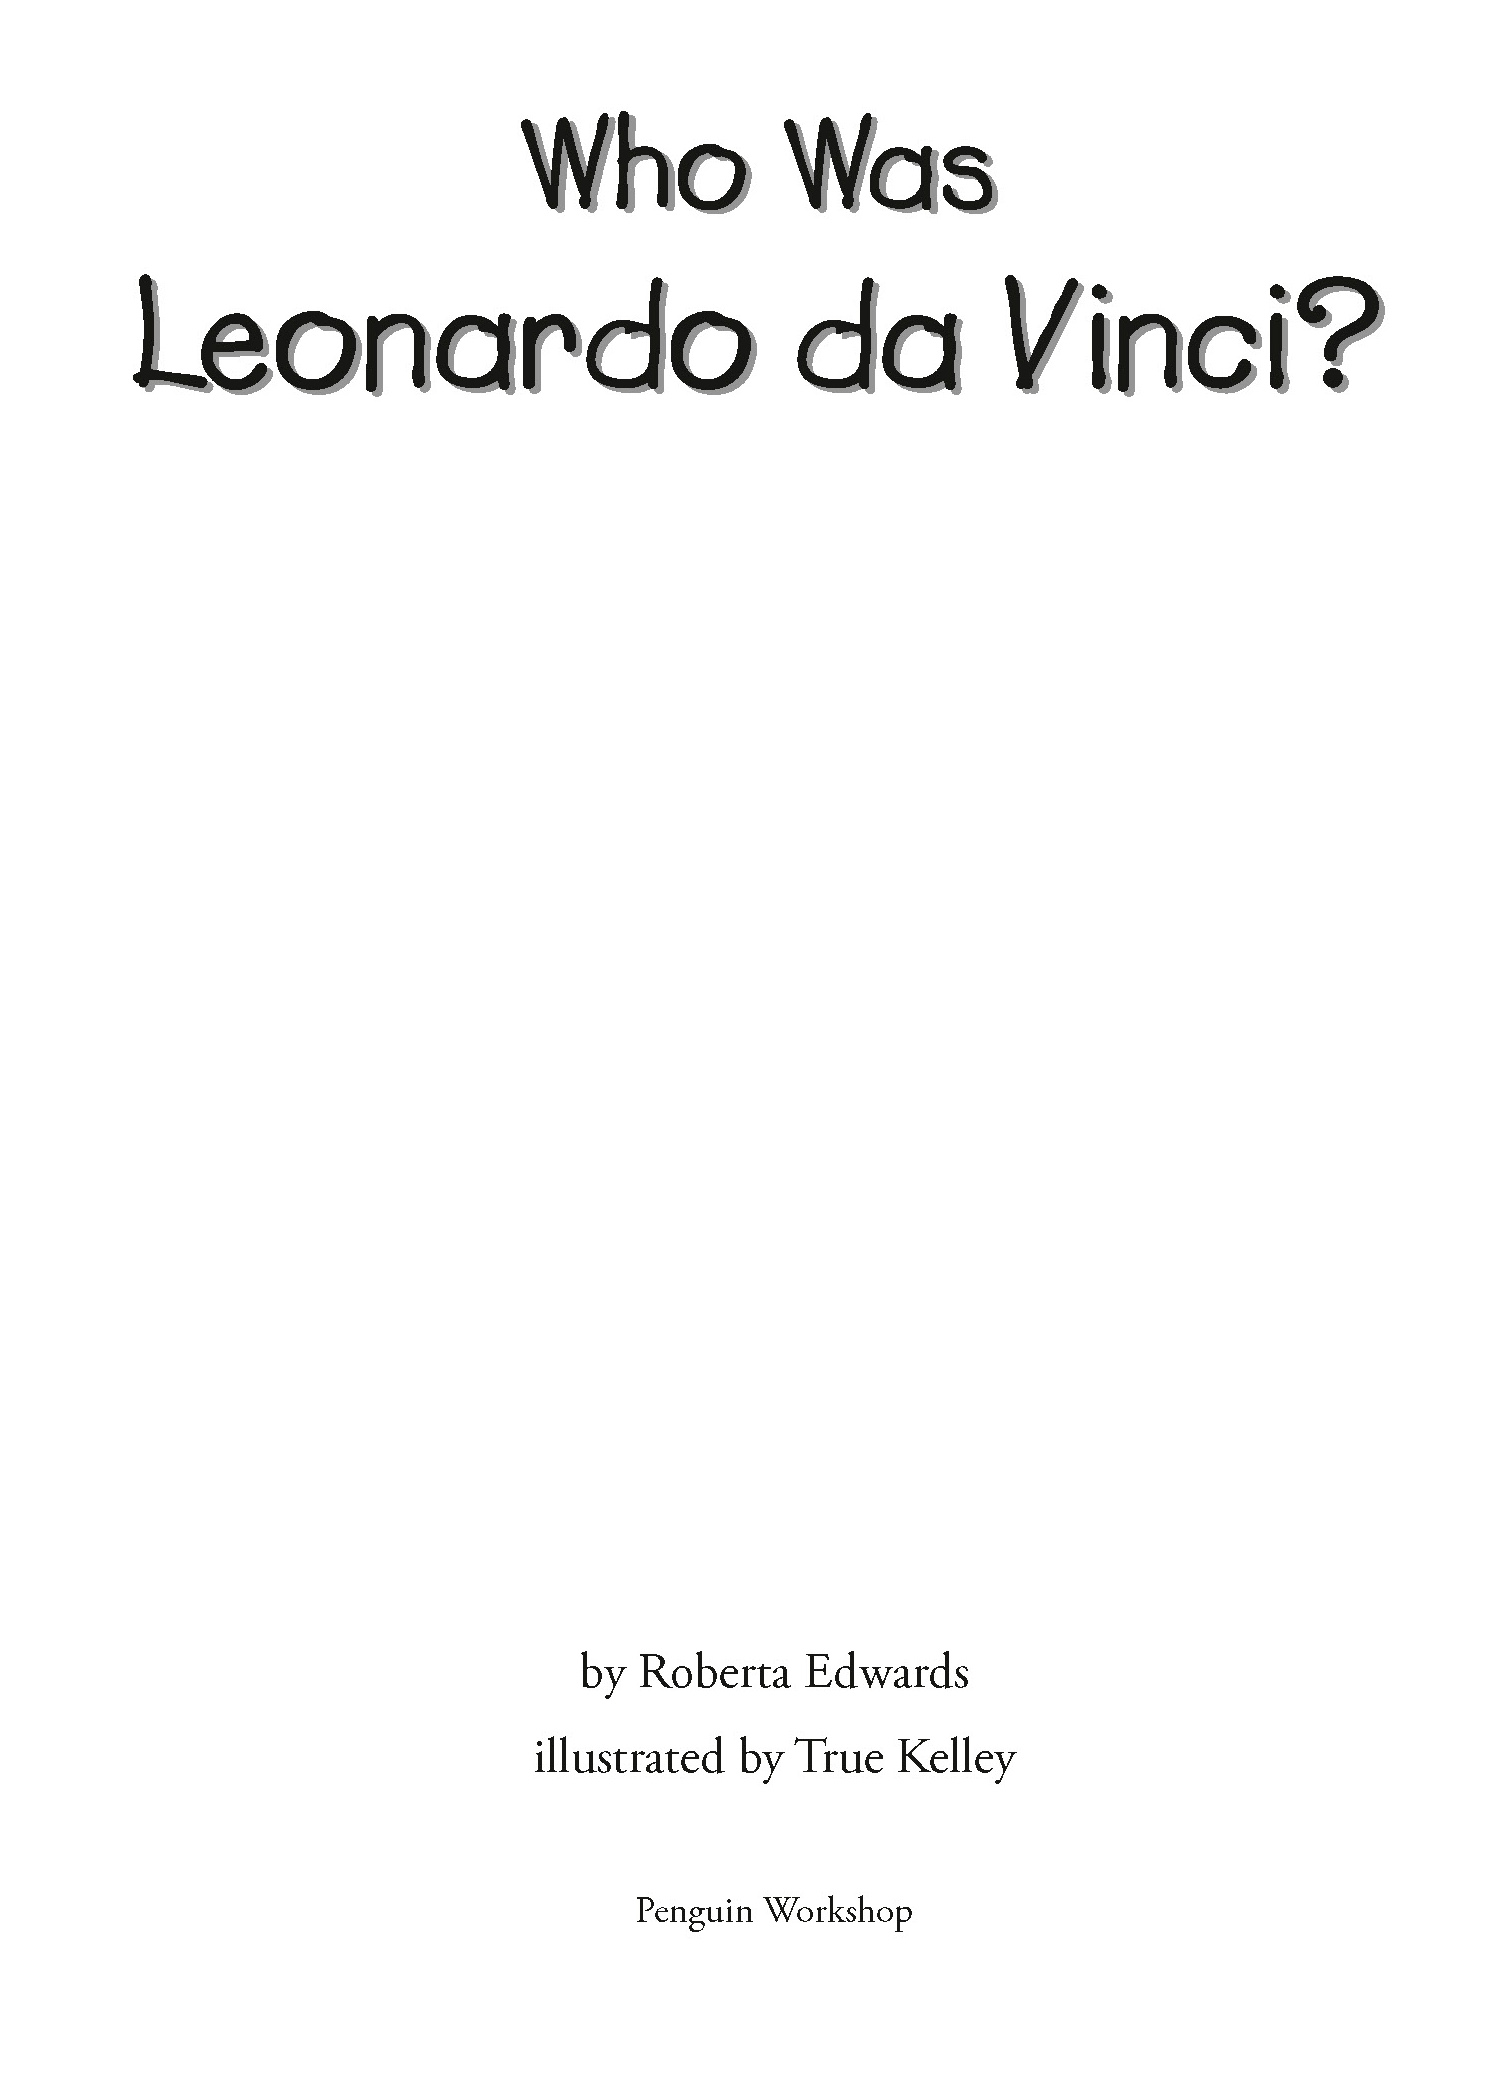 Title Page for Who Was Leonardo da Vinci?